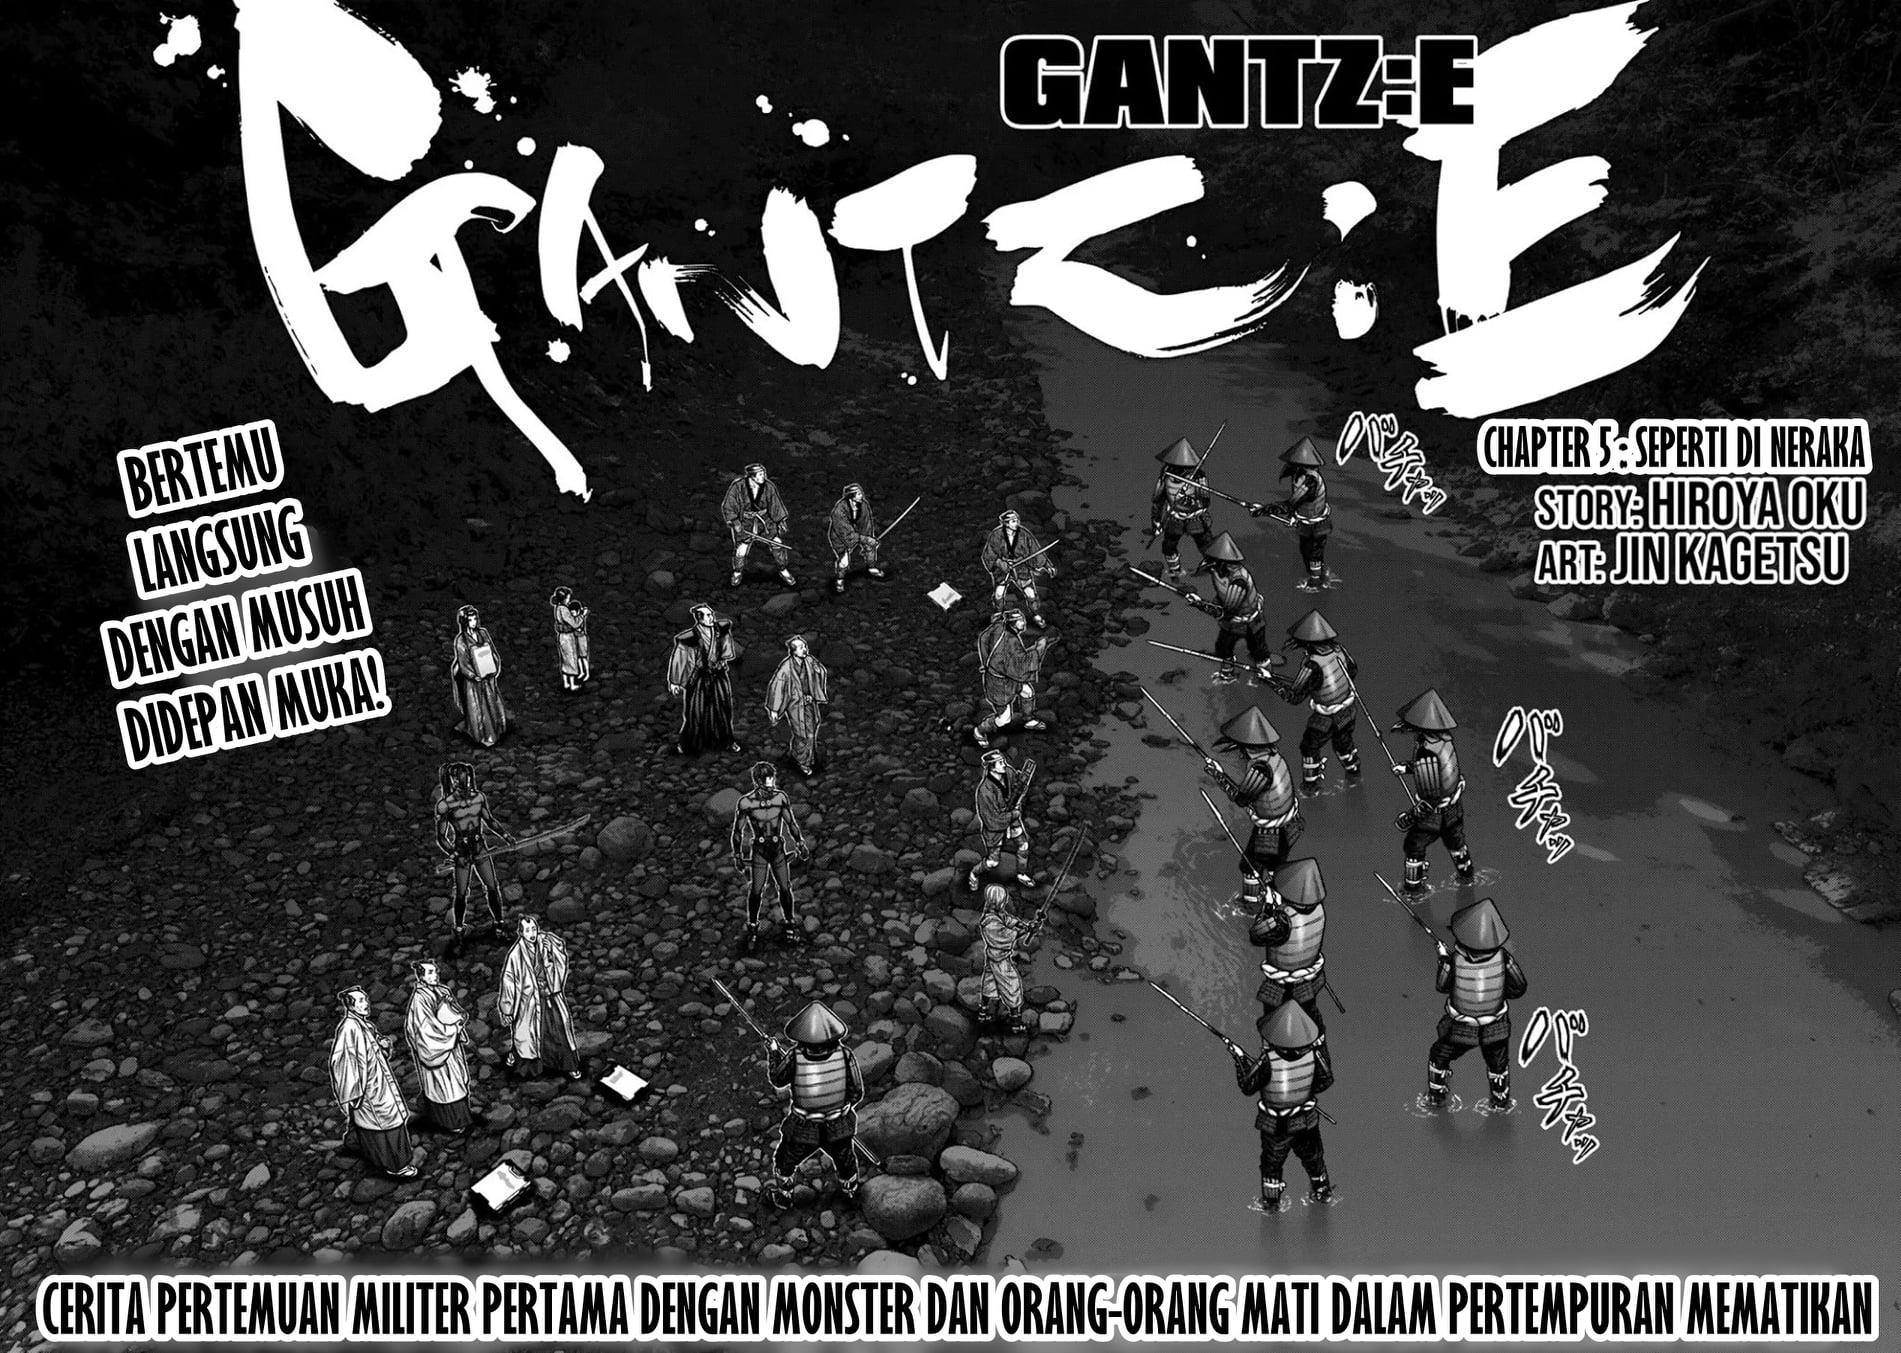 Gantz:E Chapter 5